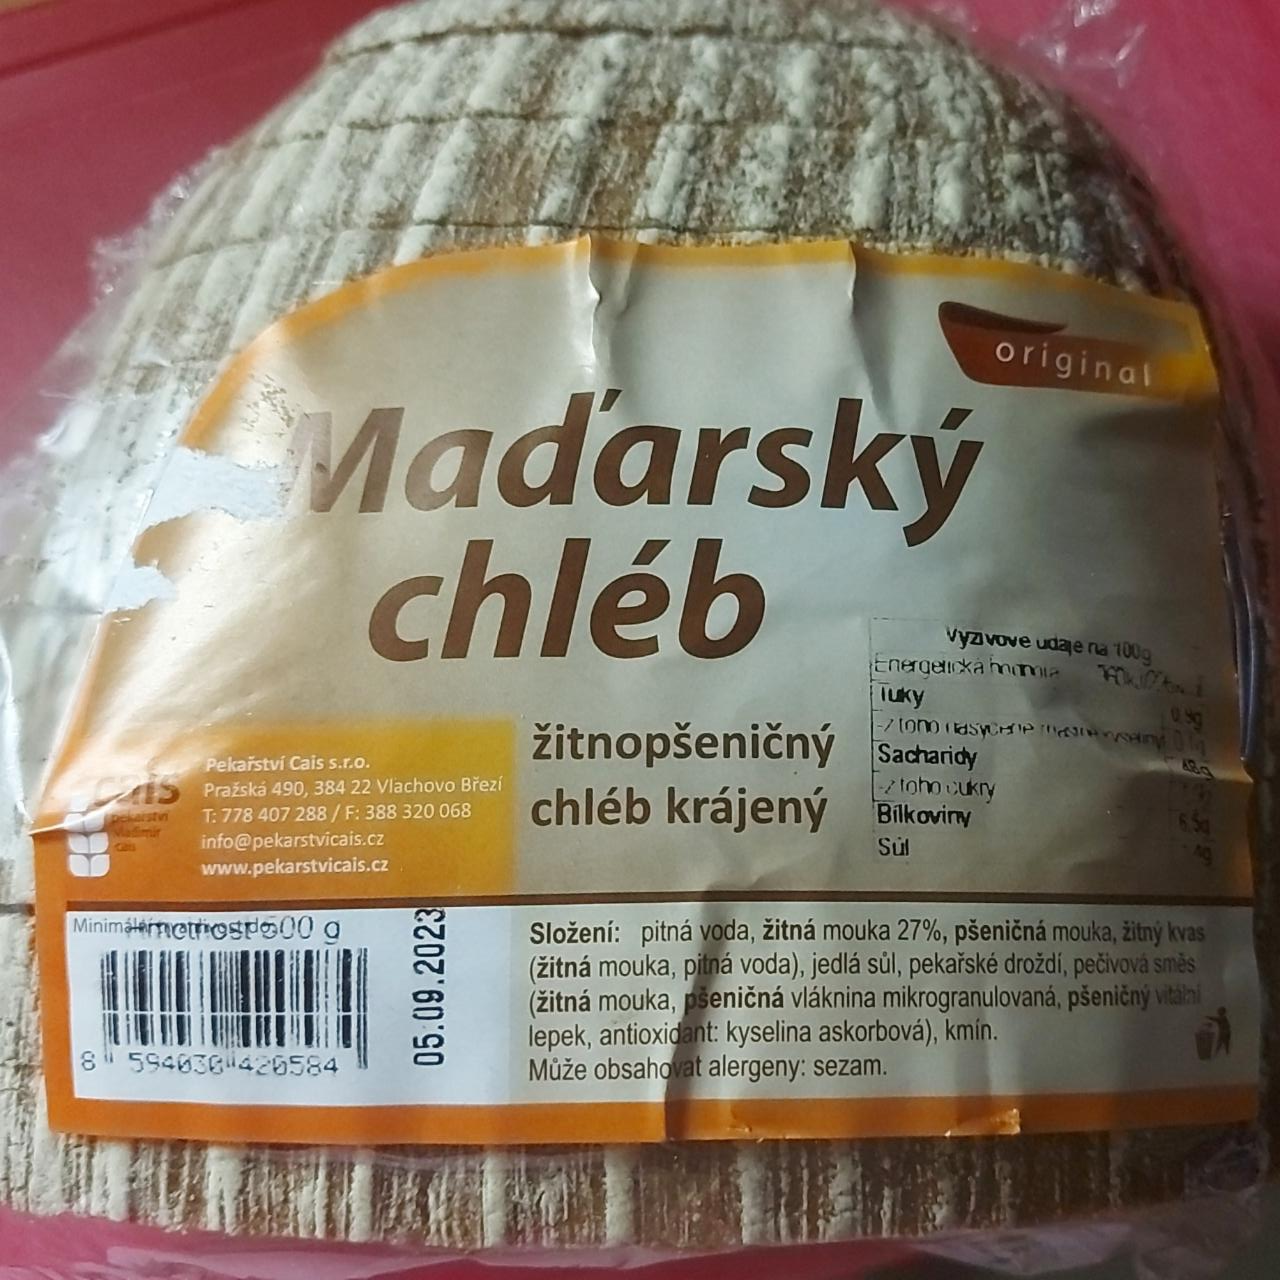 Fotografie - Maďarský chléb, Žitnopšeničný chléb Pekařství Cais